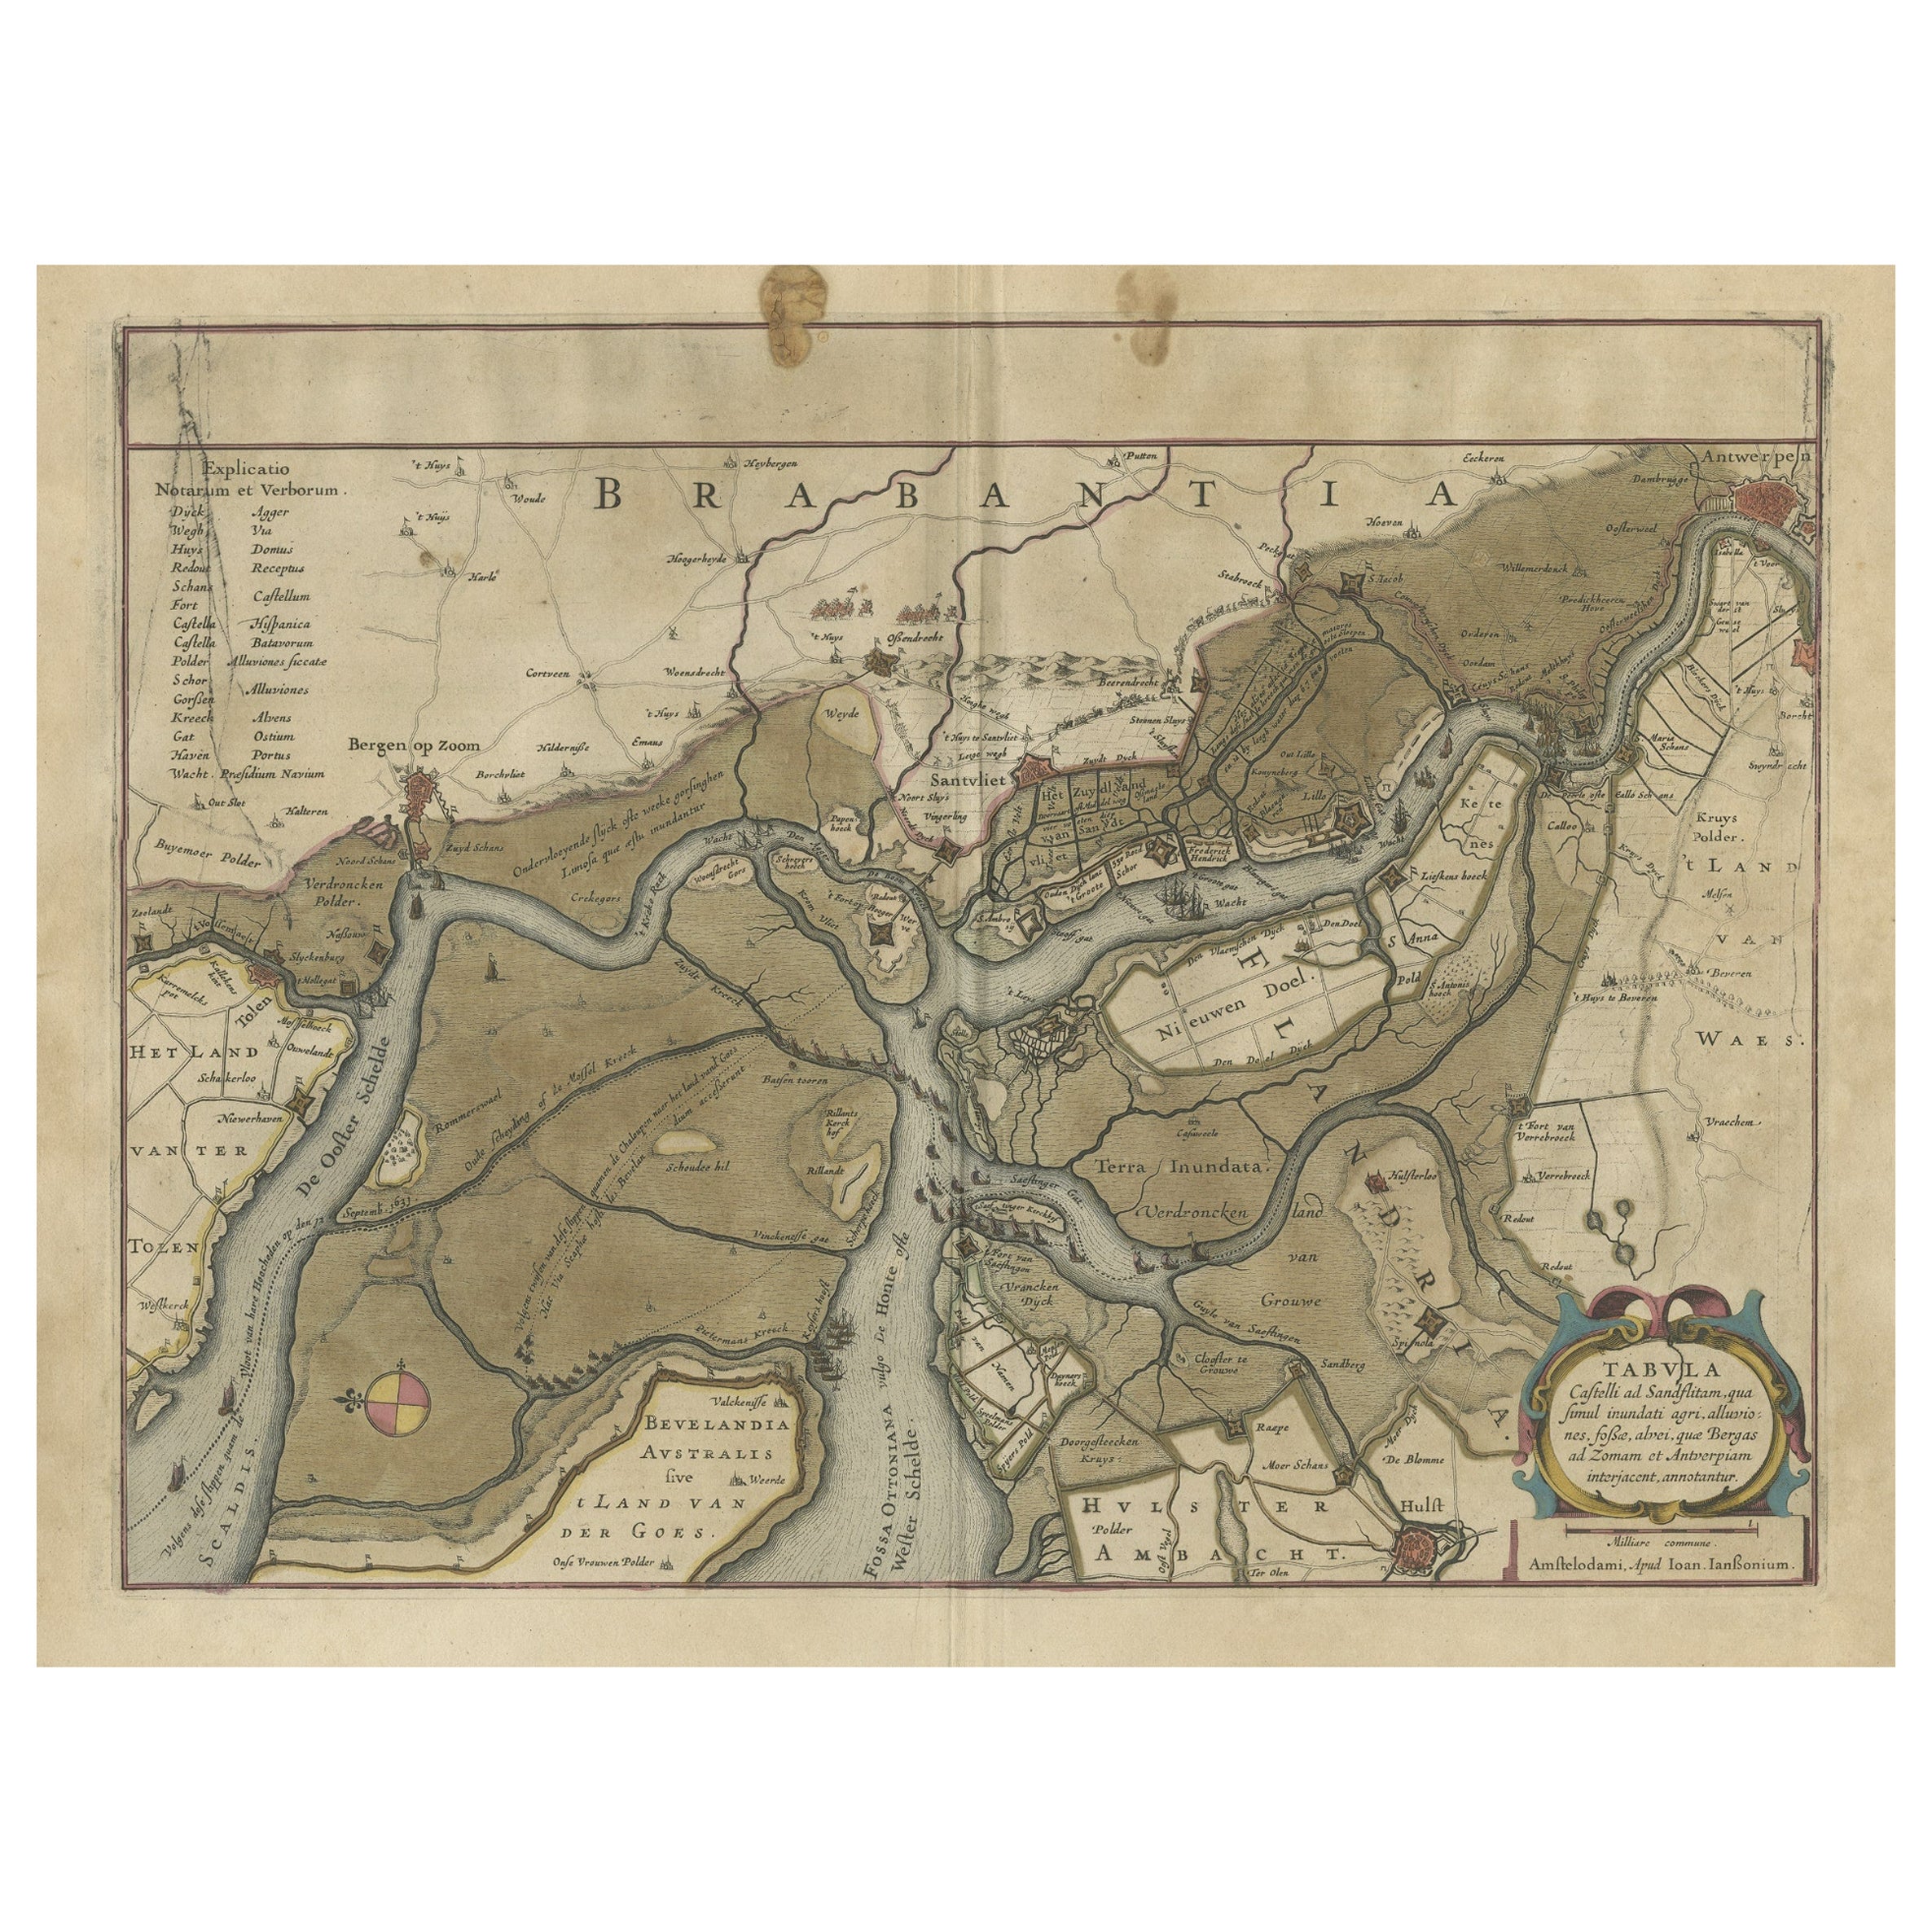 Antique Map of the region between Bergen op Zoom, Sandvliet, Hulst and Antwerp For Sale